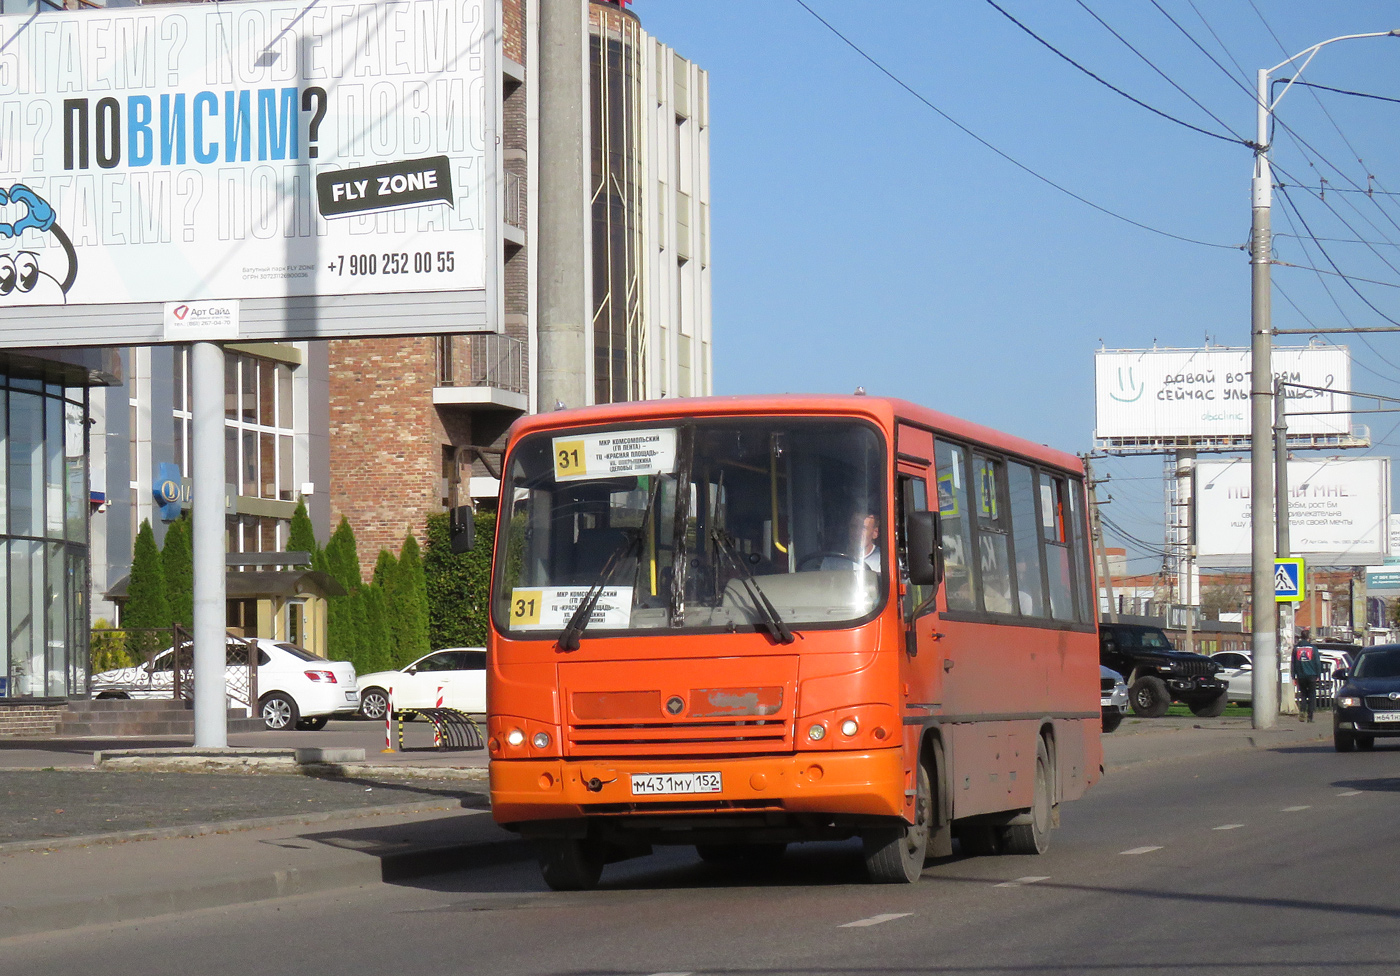 Kraj Krasnodarski, PAZ-320402-05 Nr М 431 МУ 152